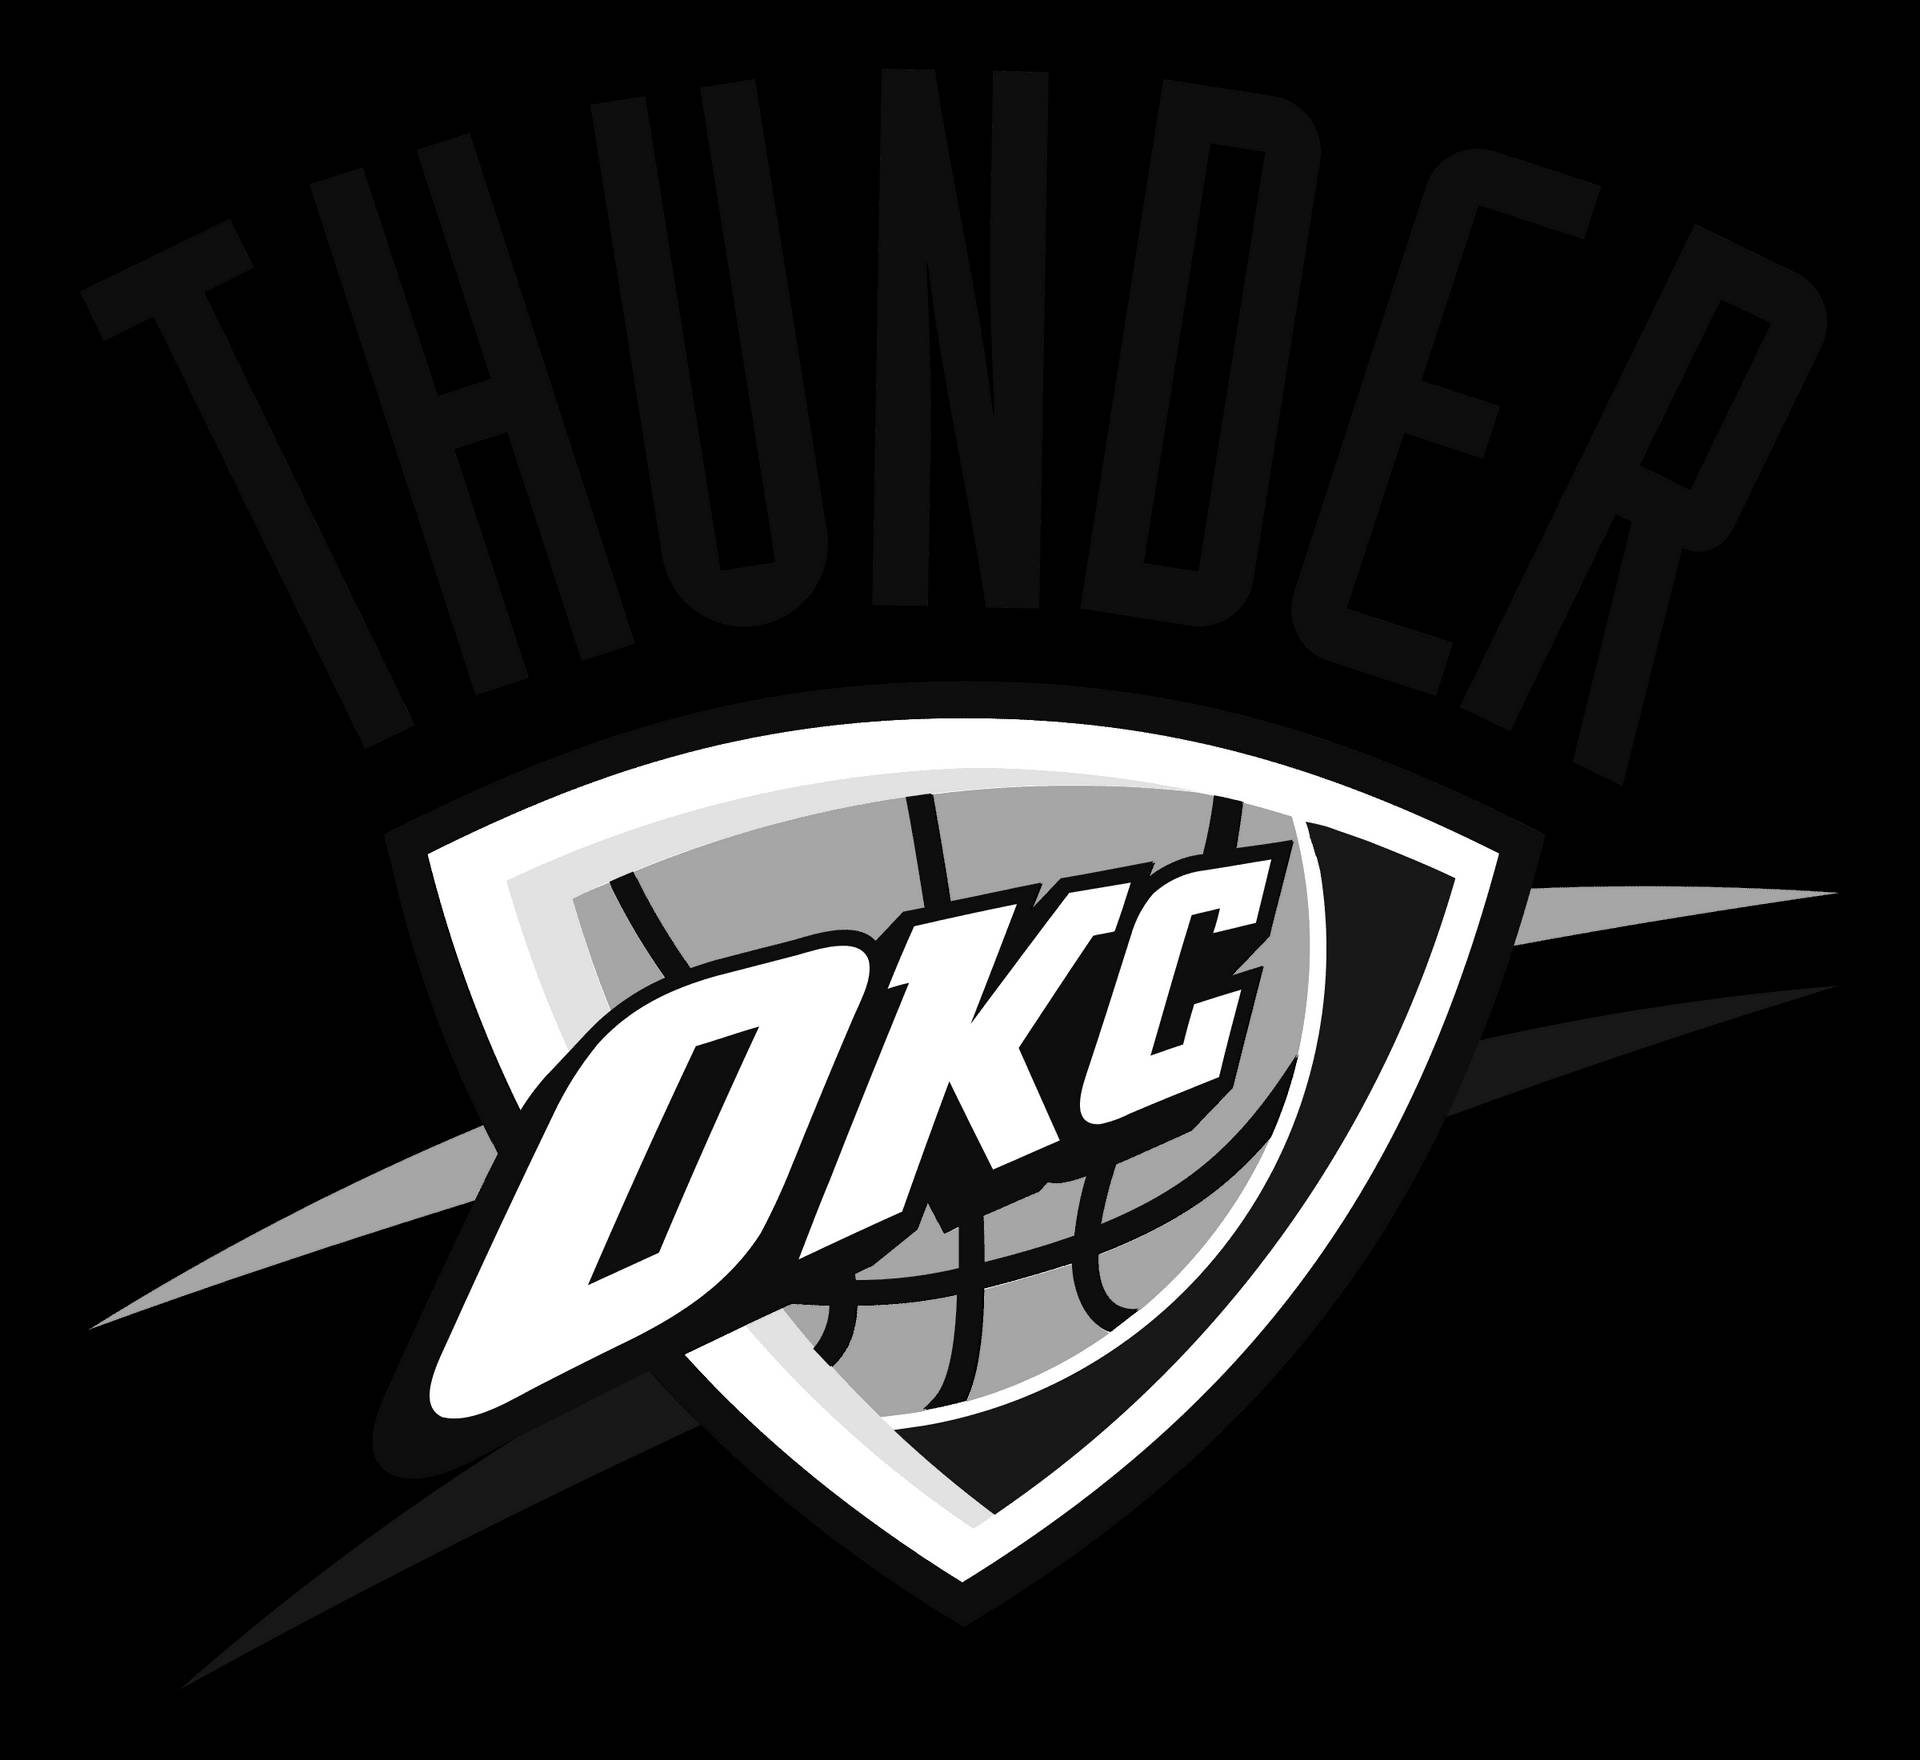 Monochrome Oklahoma City Thunder